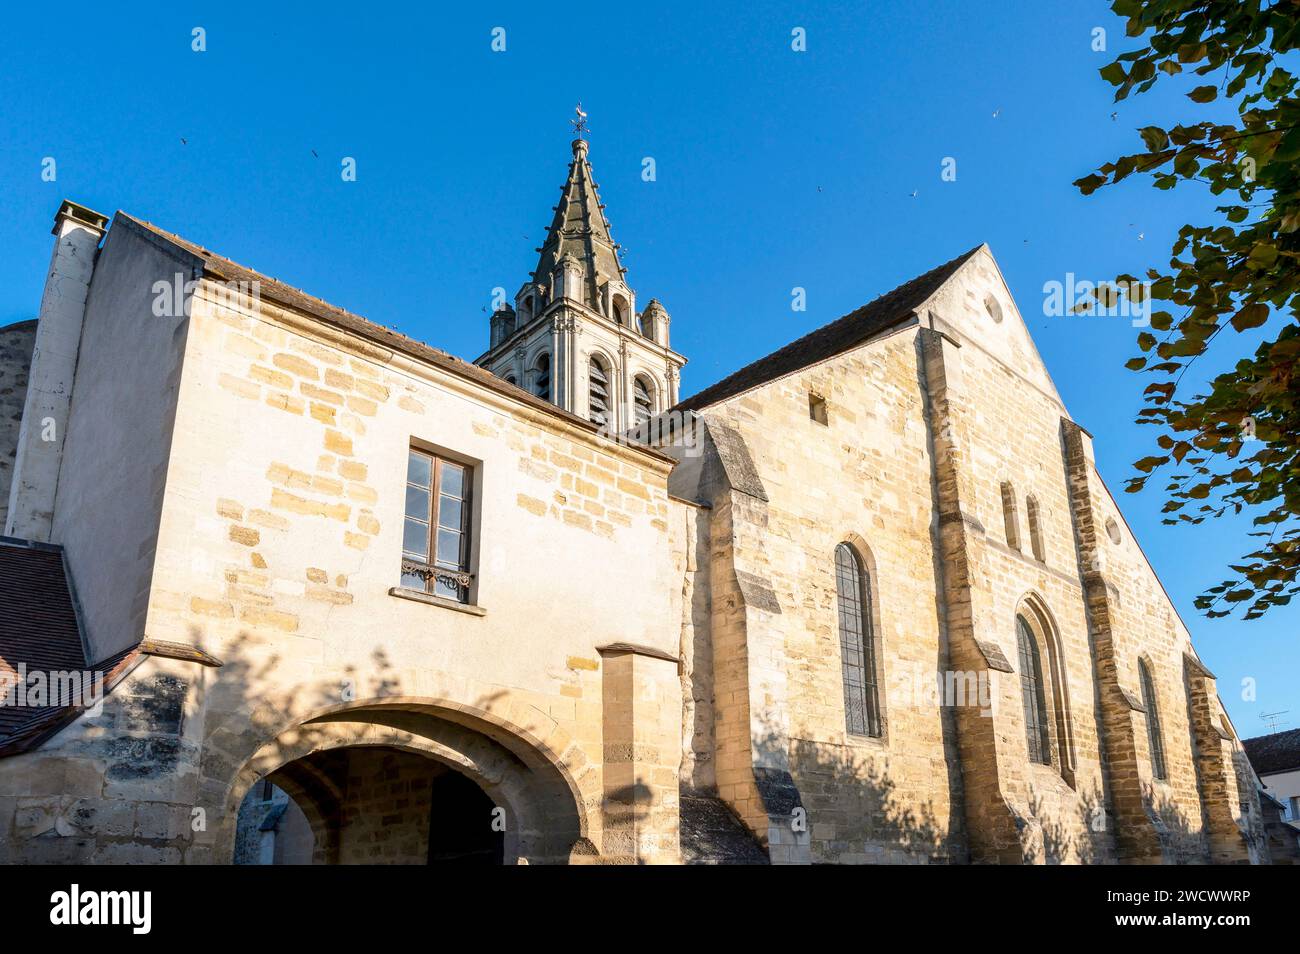 France, Val d'Oise, ville de Cergy, vieux village de Cergy, église St-Christophe Banque D'Images